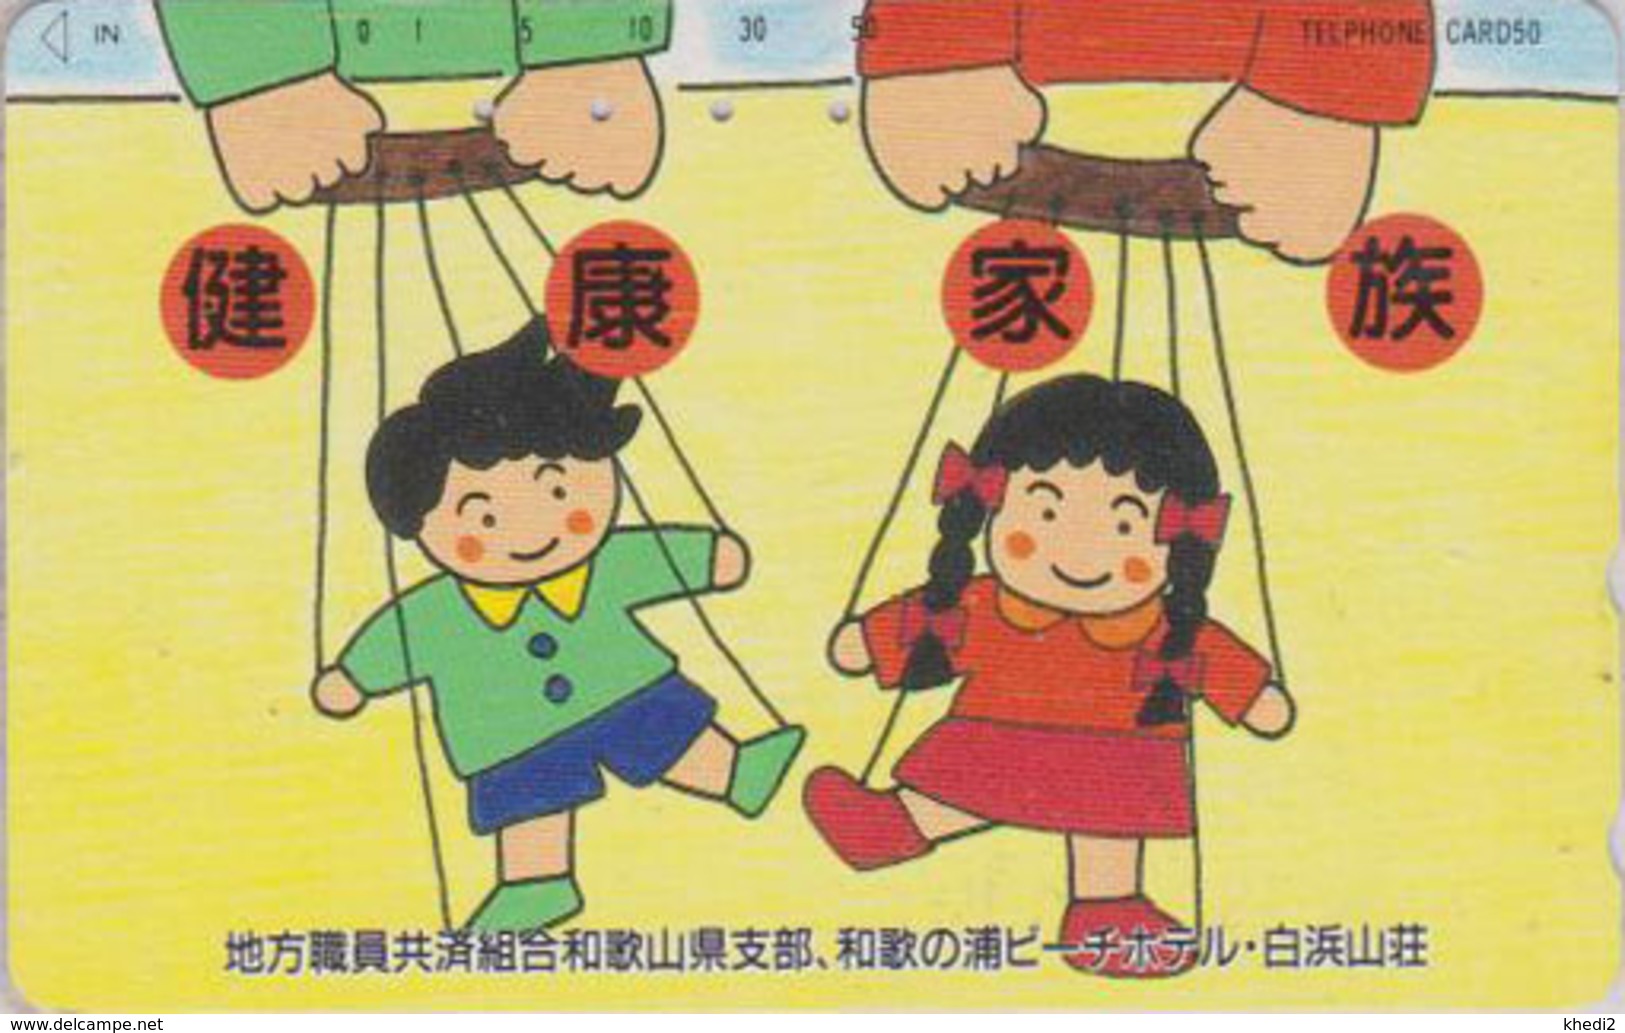 Télécarte Japon / 330-42519 - Jeu Jouet - MARIONNETTE - PUPPET Game Toy Japan Phonecard - 222 - Games